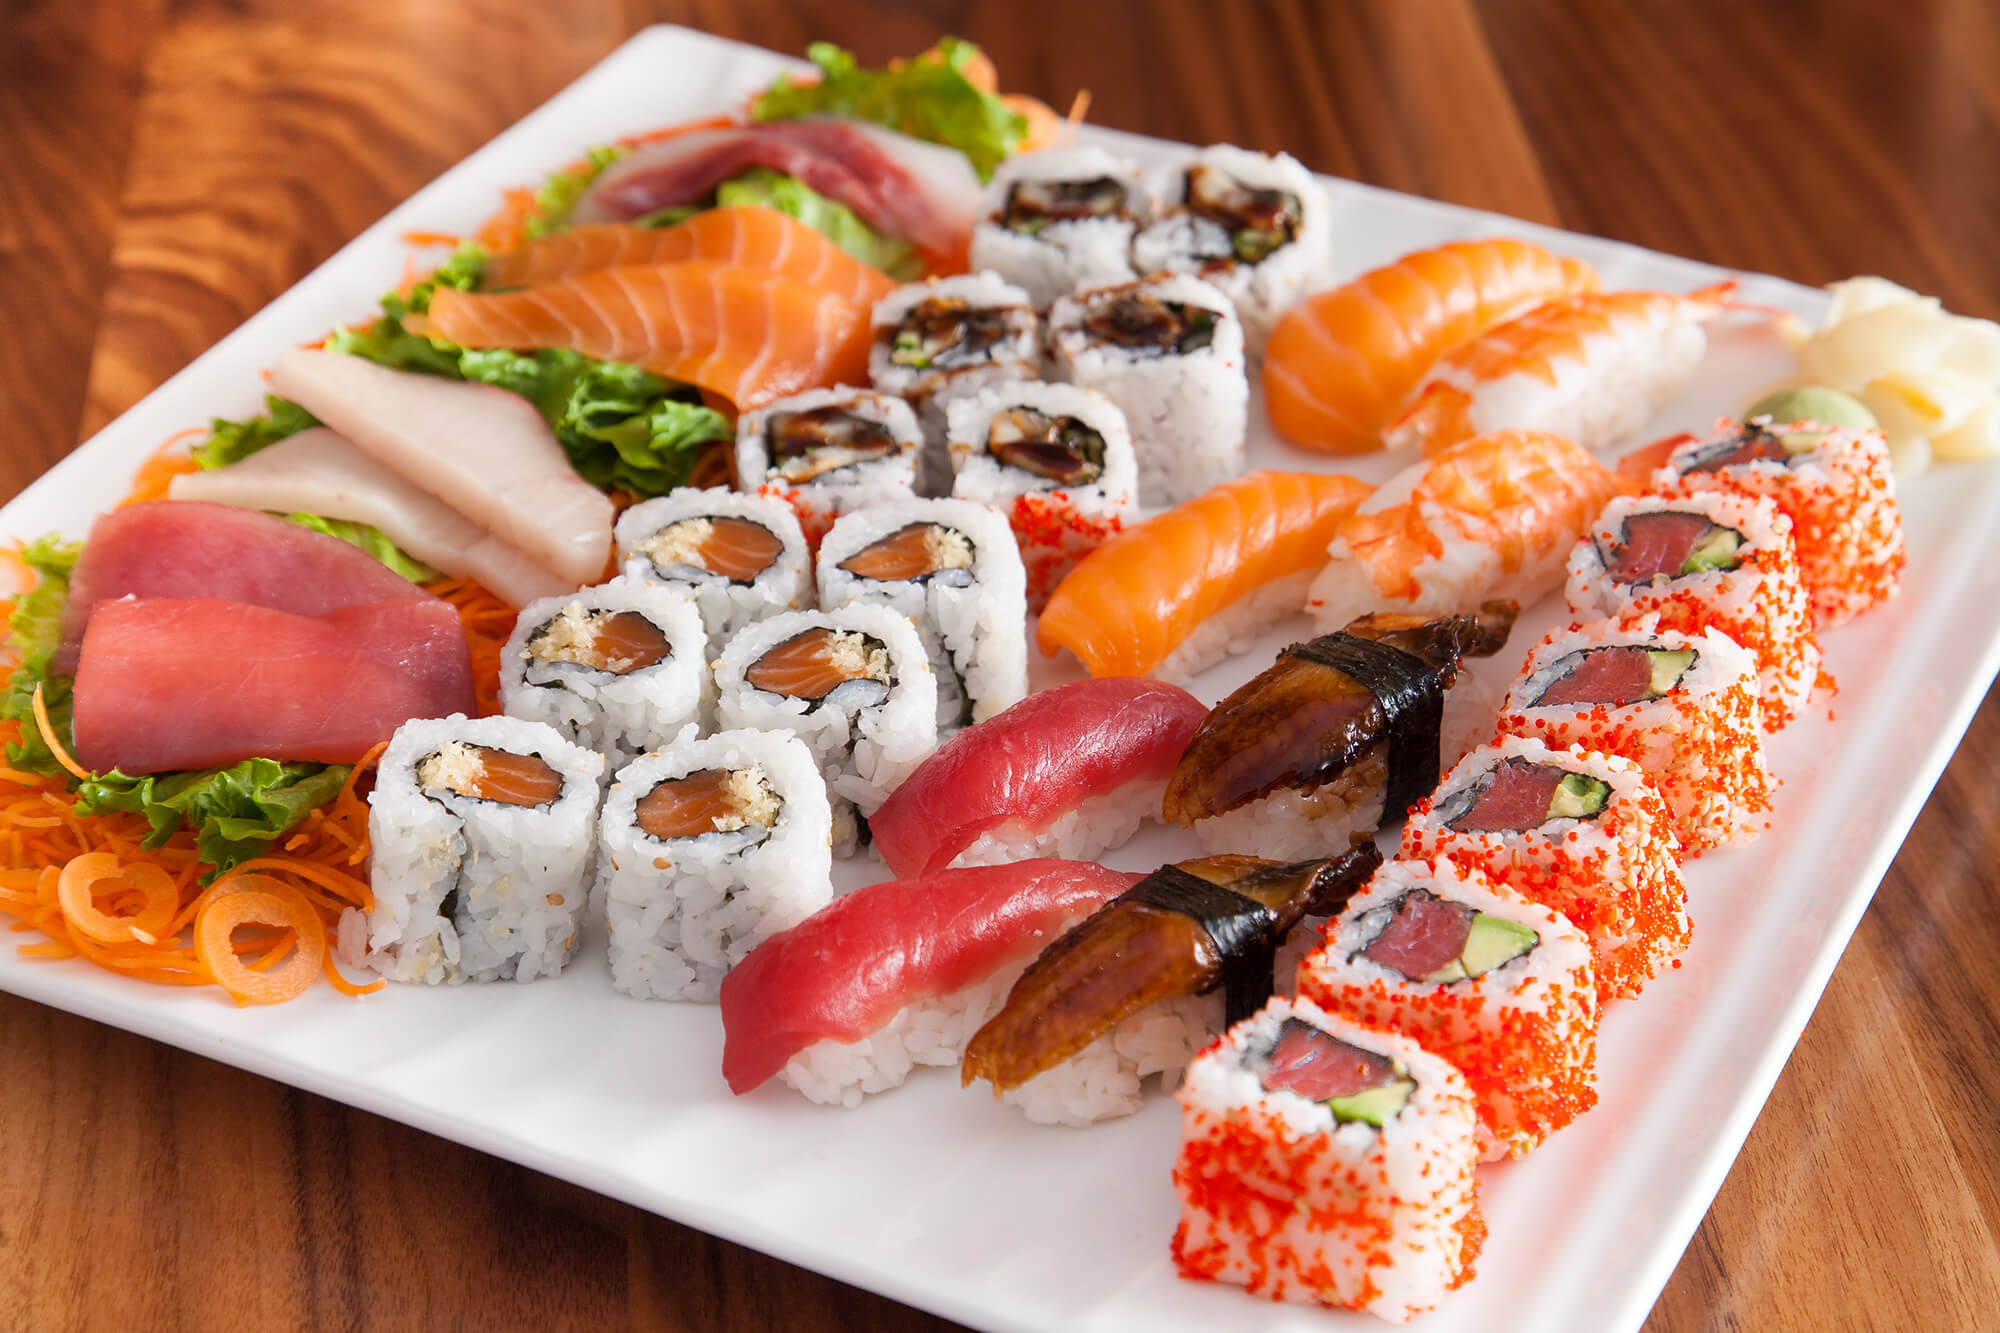 Phân biệt sushi và sashimi ở Nhật Bản